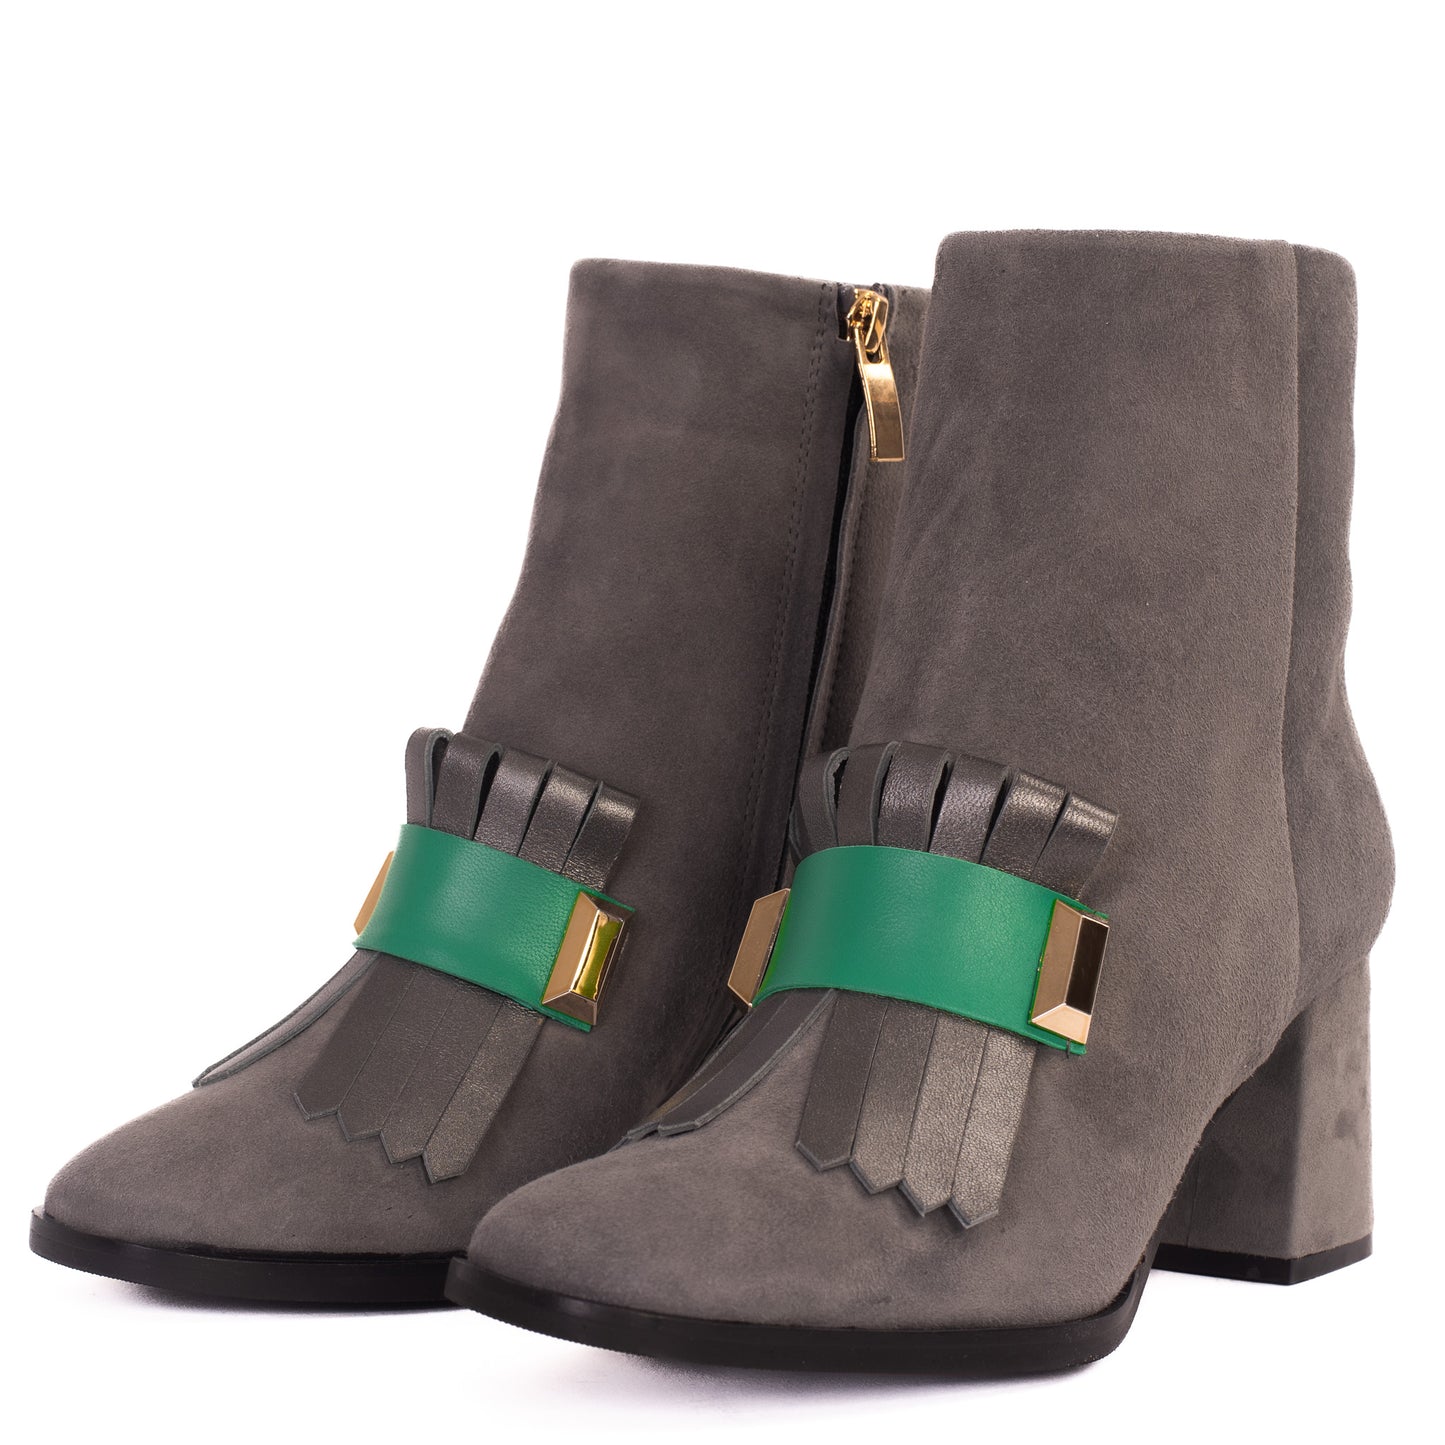 The Luksor Grey Suede Leather Block Heel Women Boot